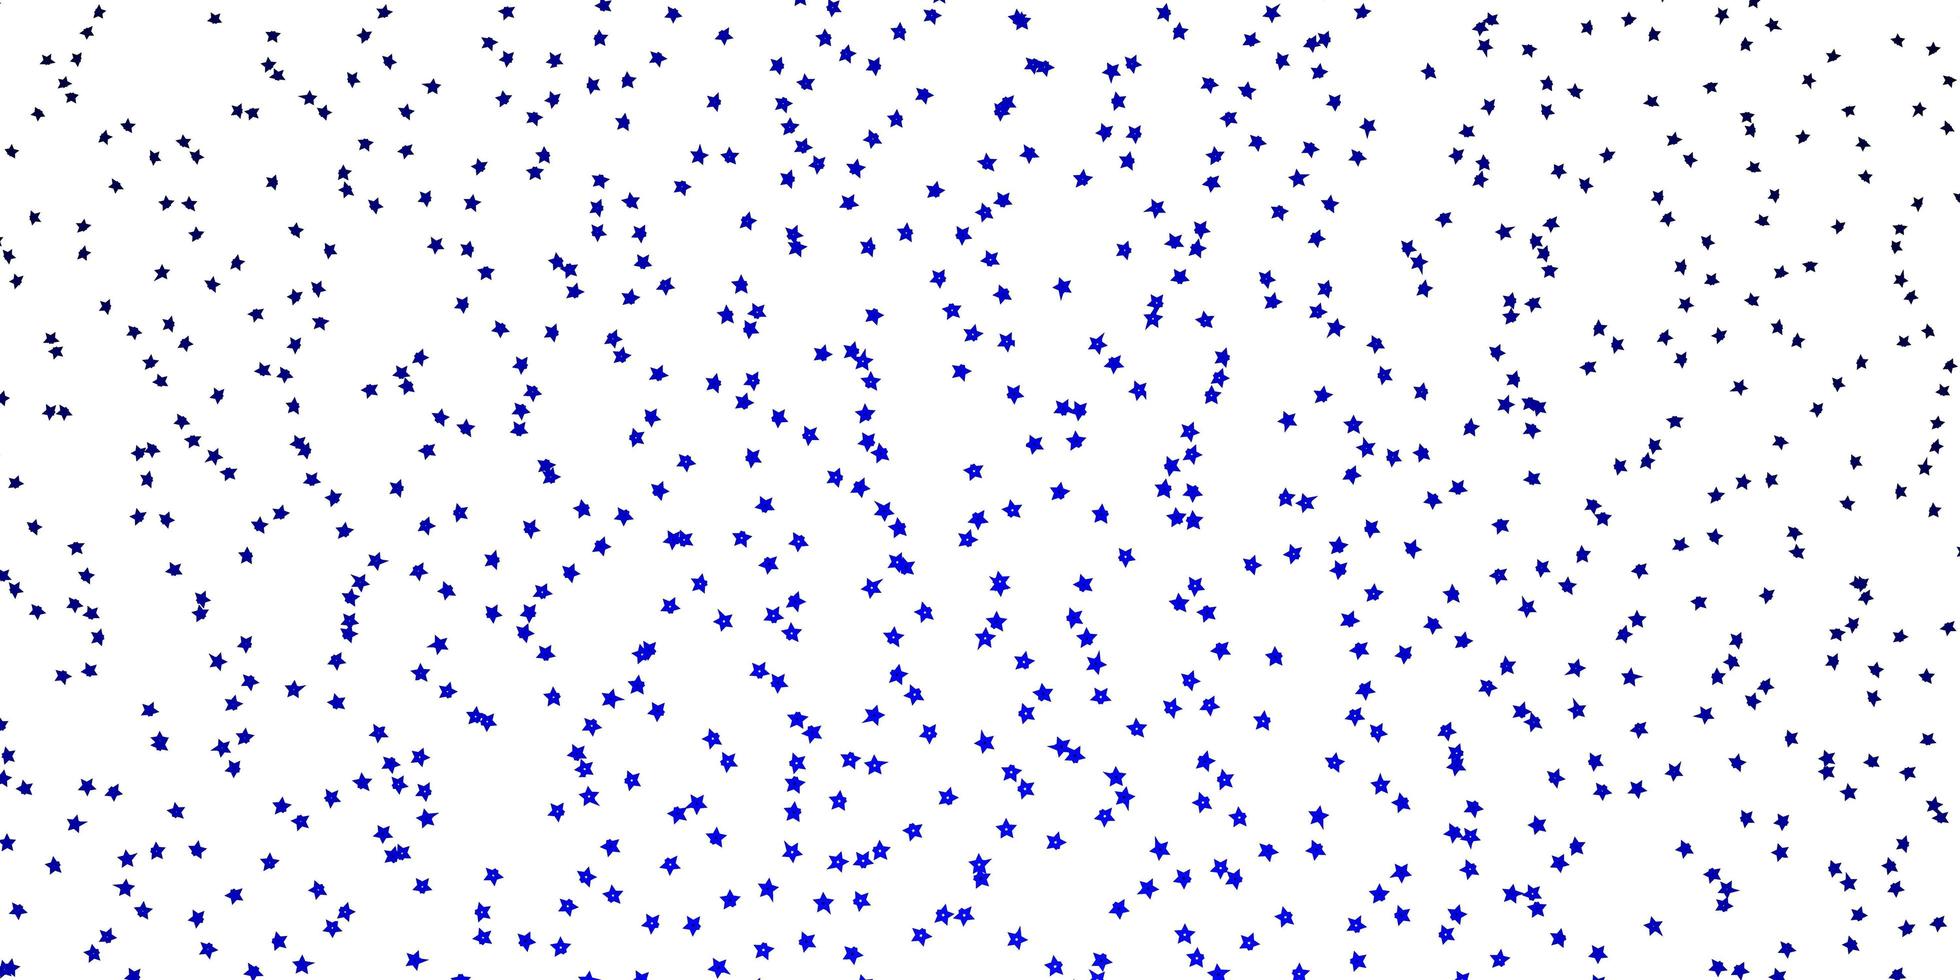 modèle vectoriel bleu foncé avec des étoiles abstraites.